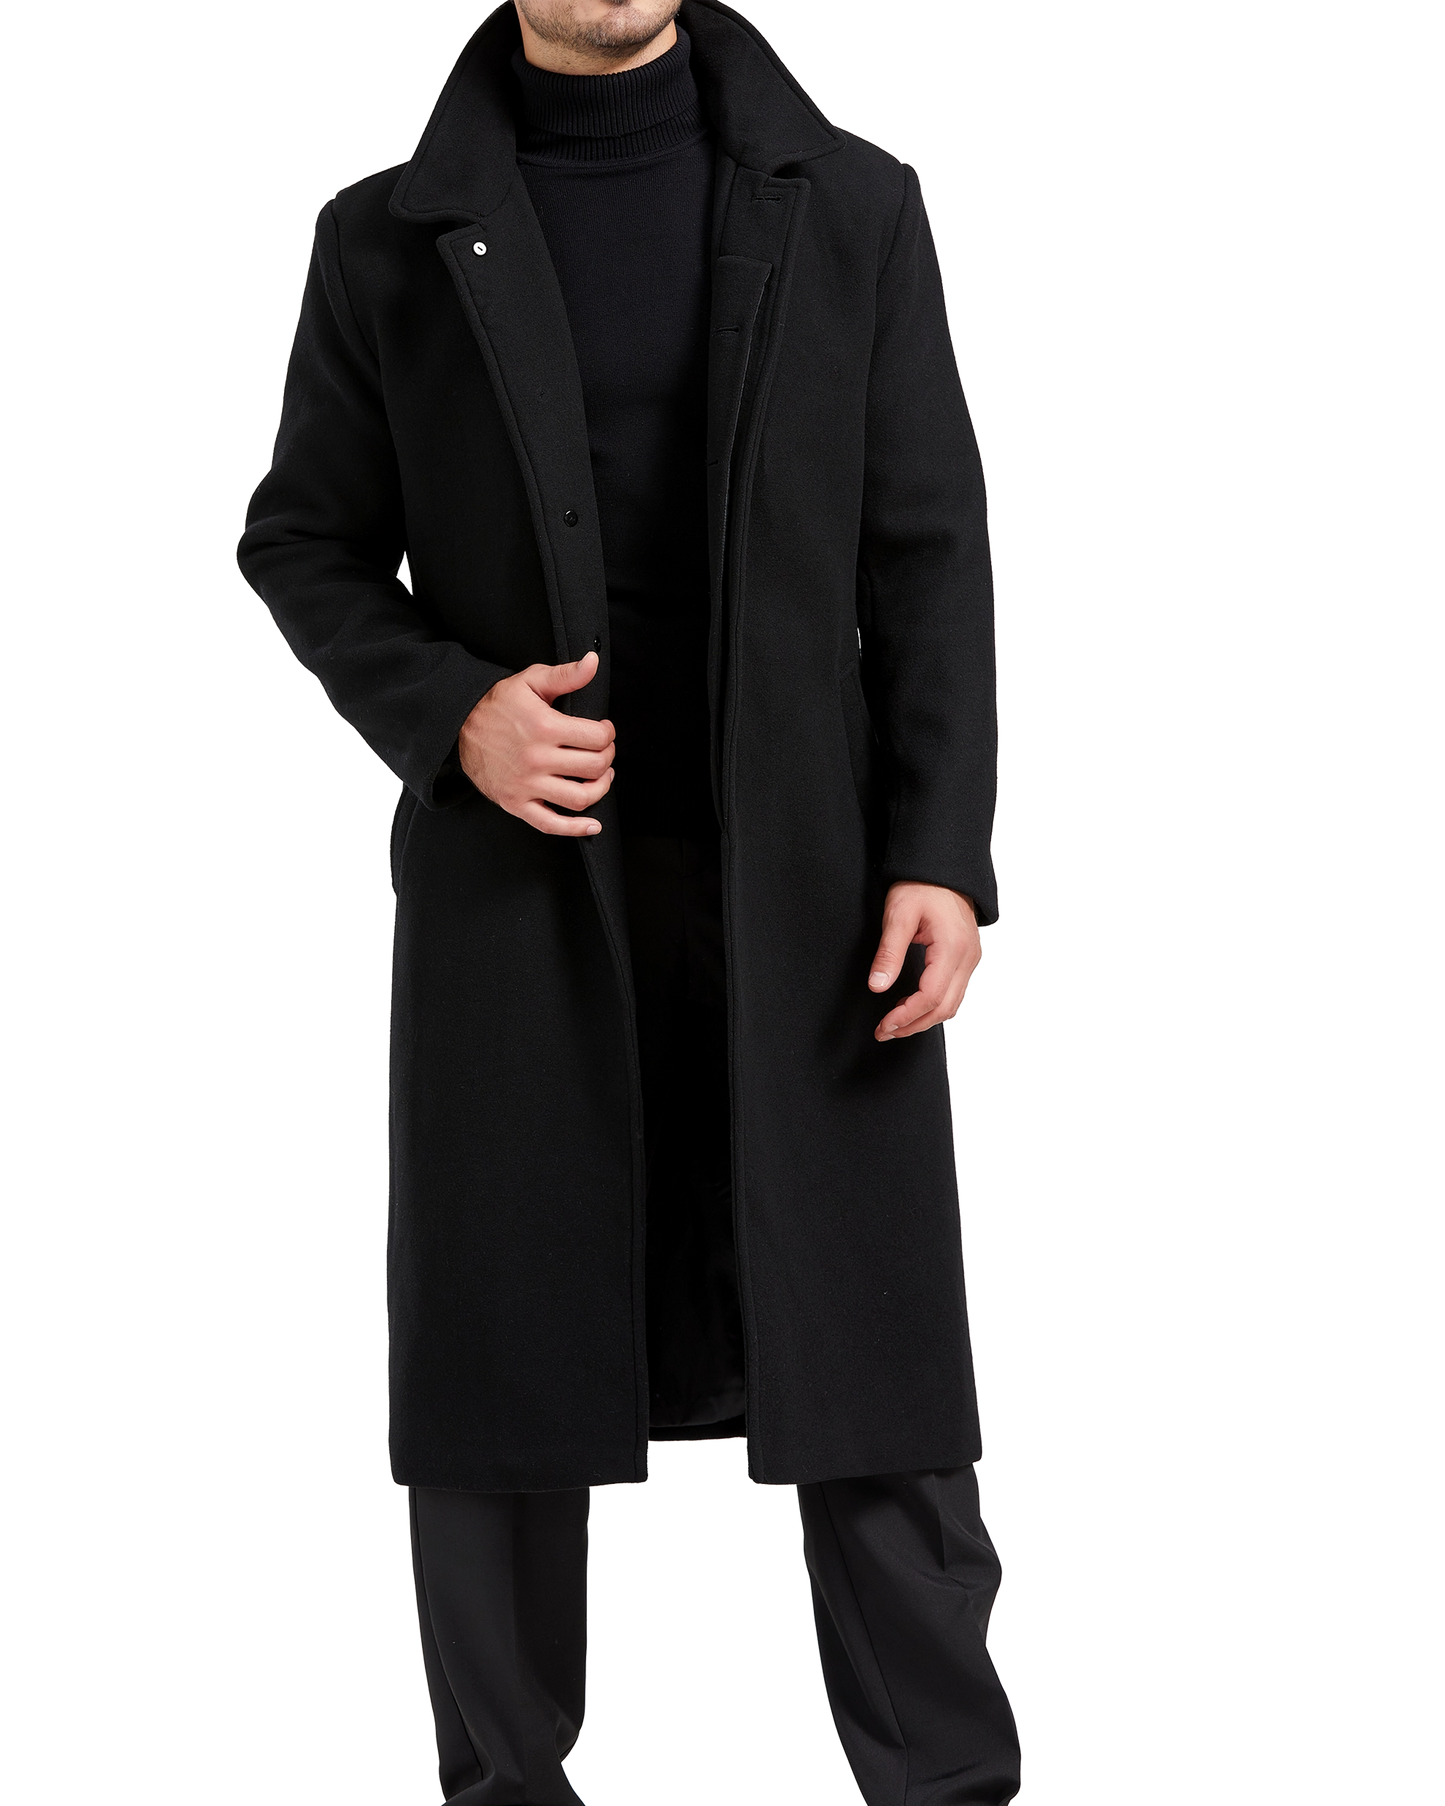 Black Long Wool Cashmere Overcoat Hidden Buttons